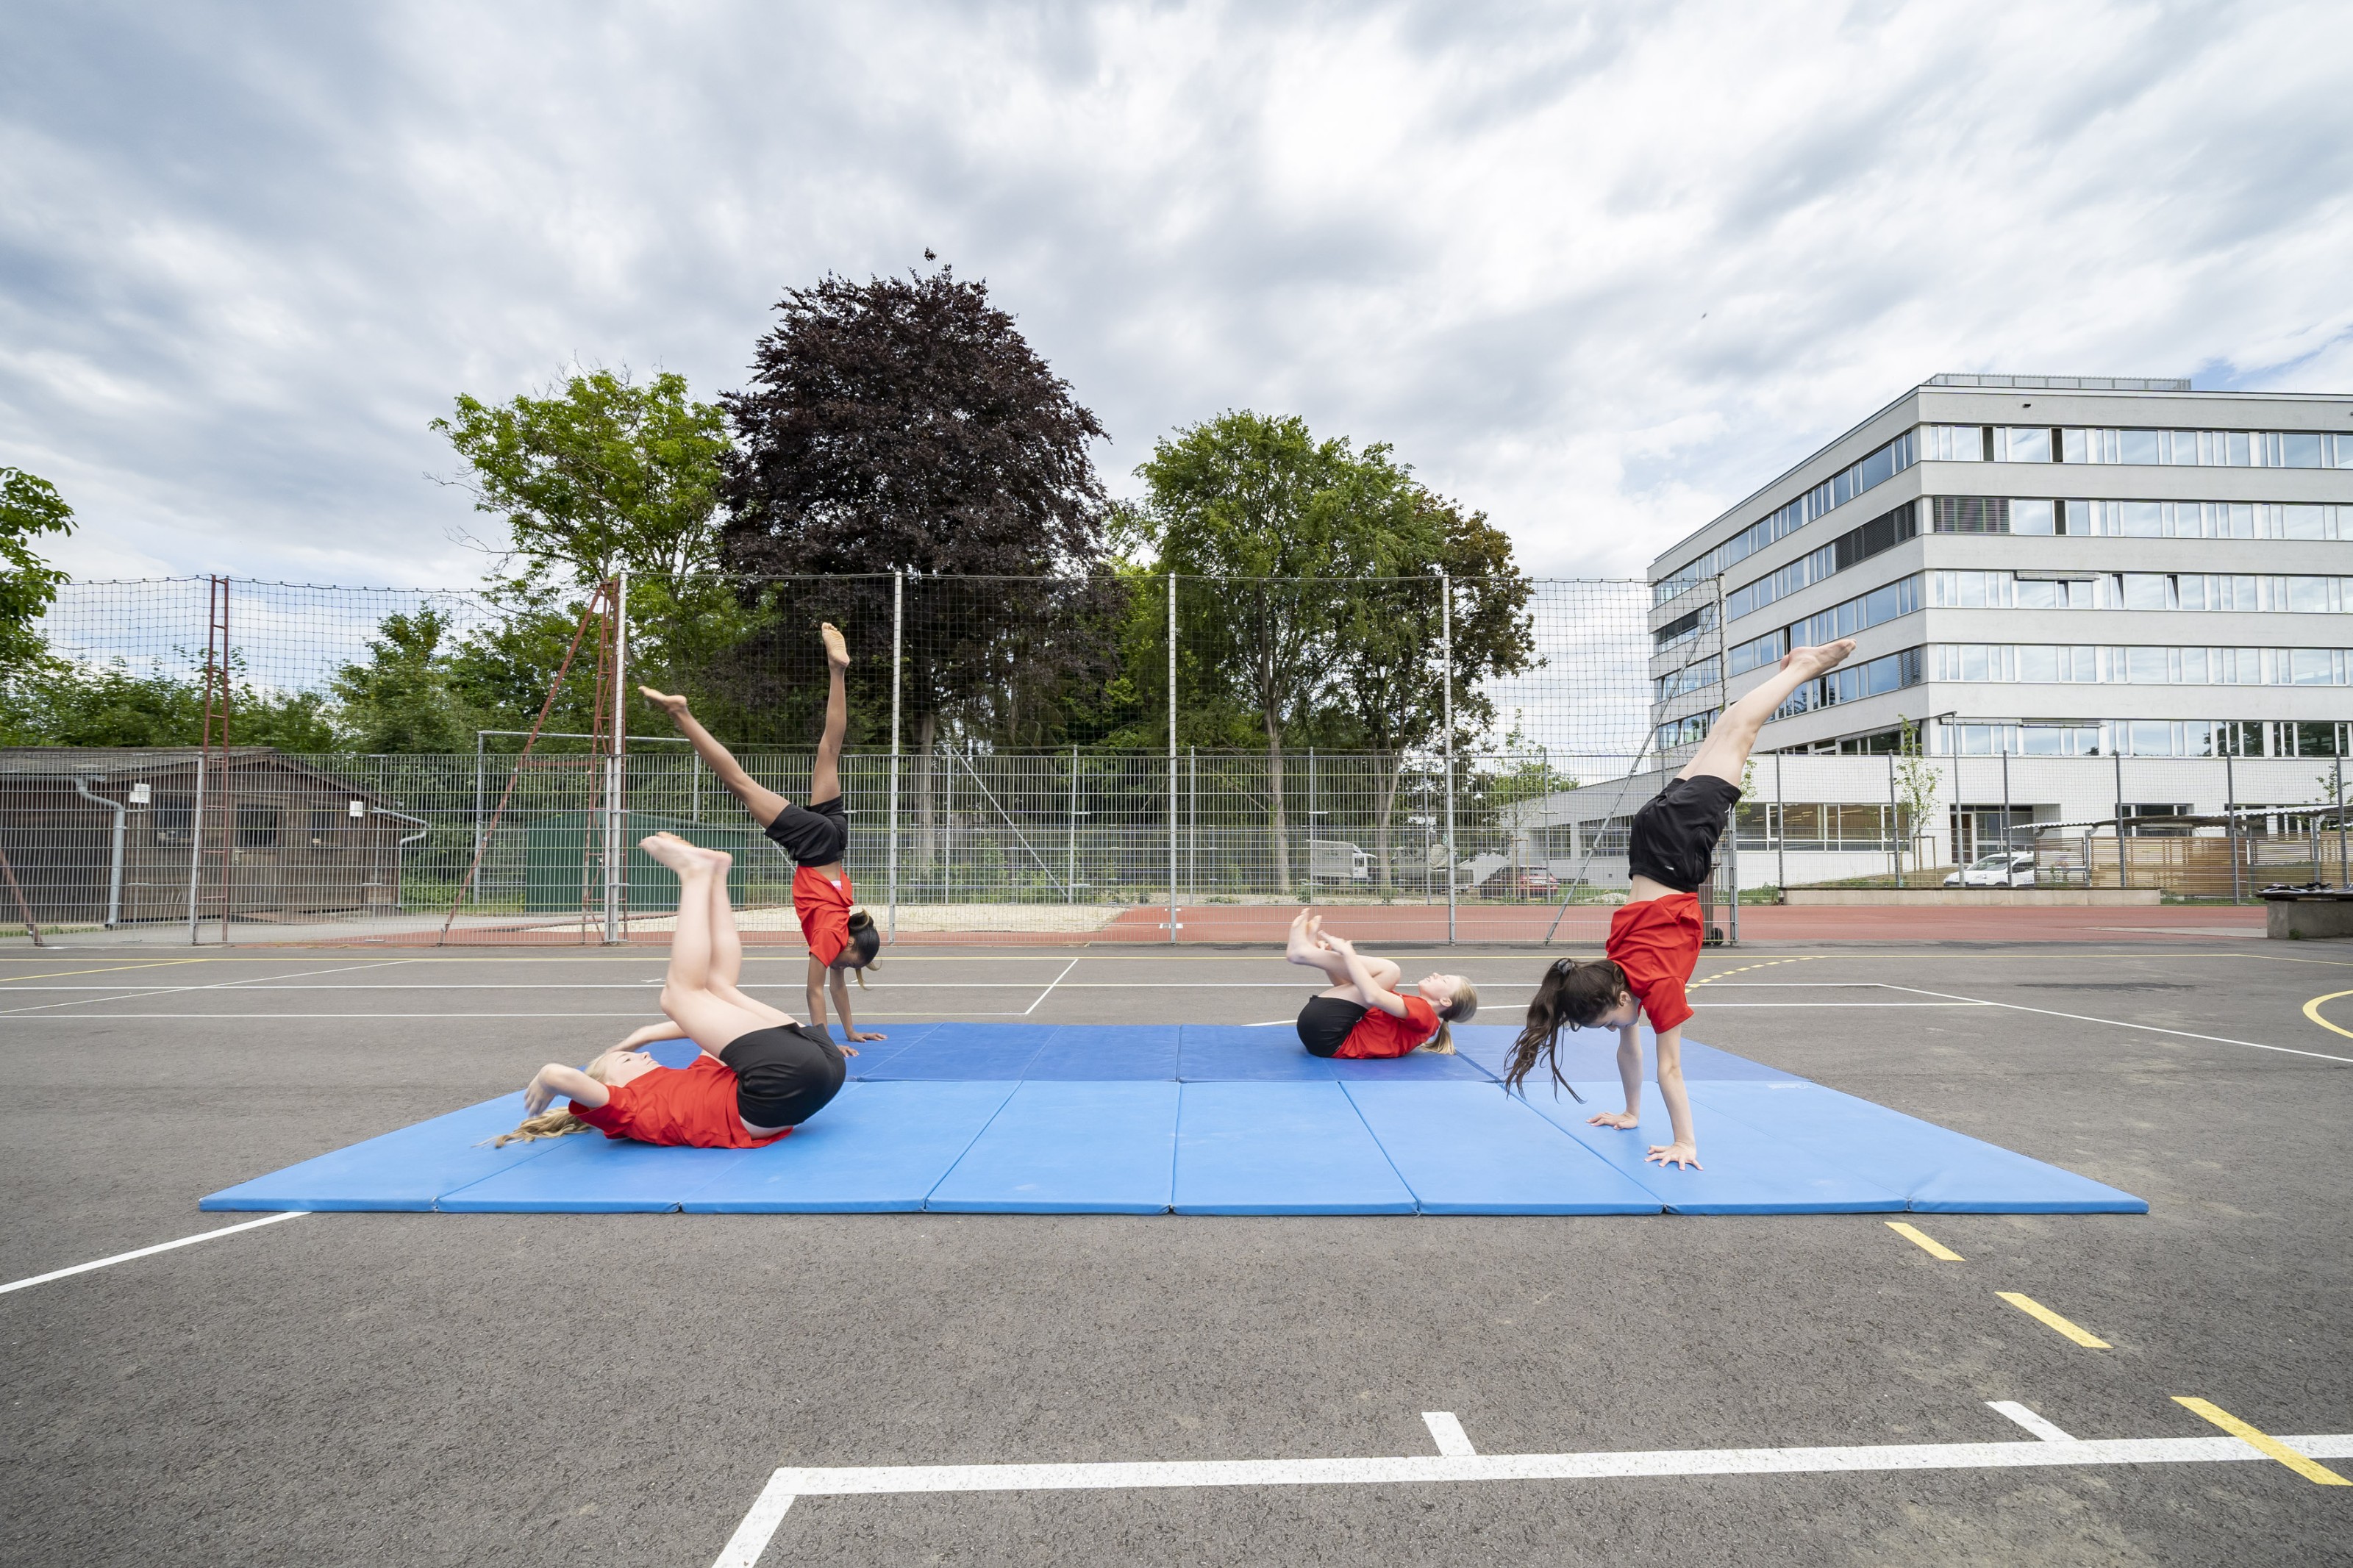 Sportmittelschule Bruckner, Sportplatz mit SchülerInnen